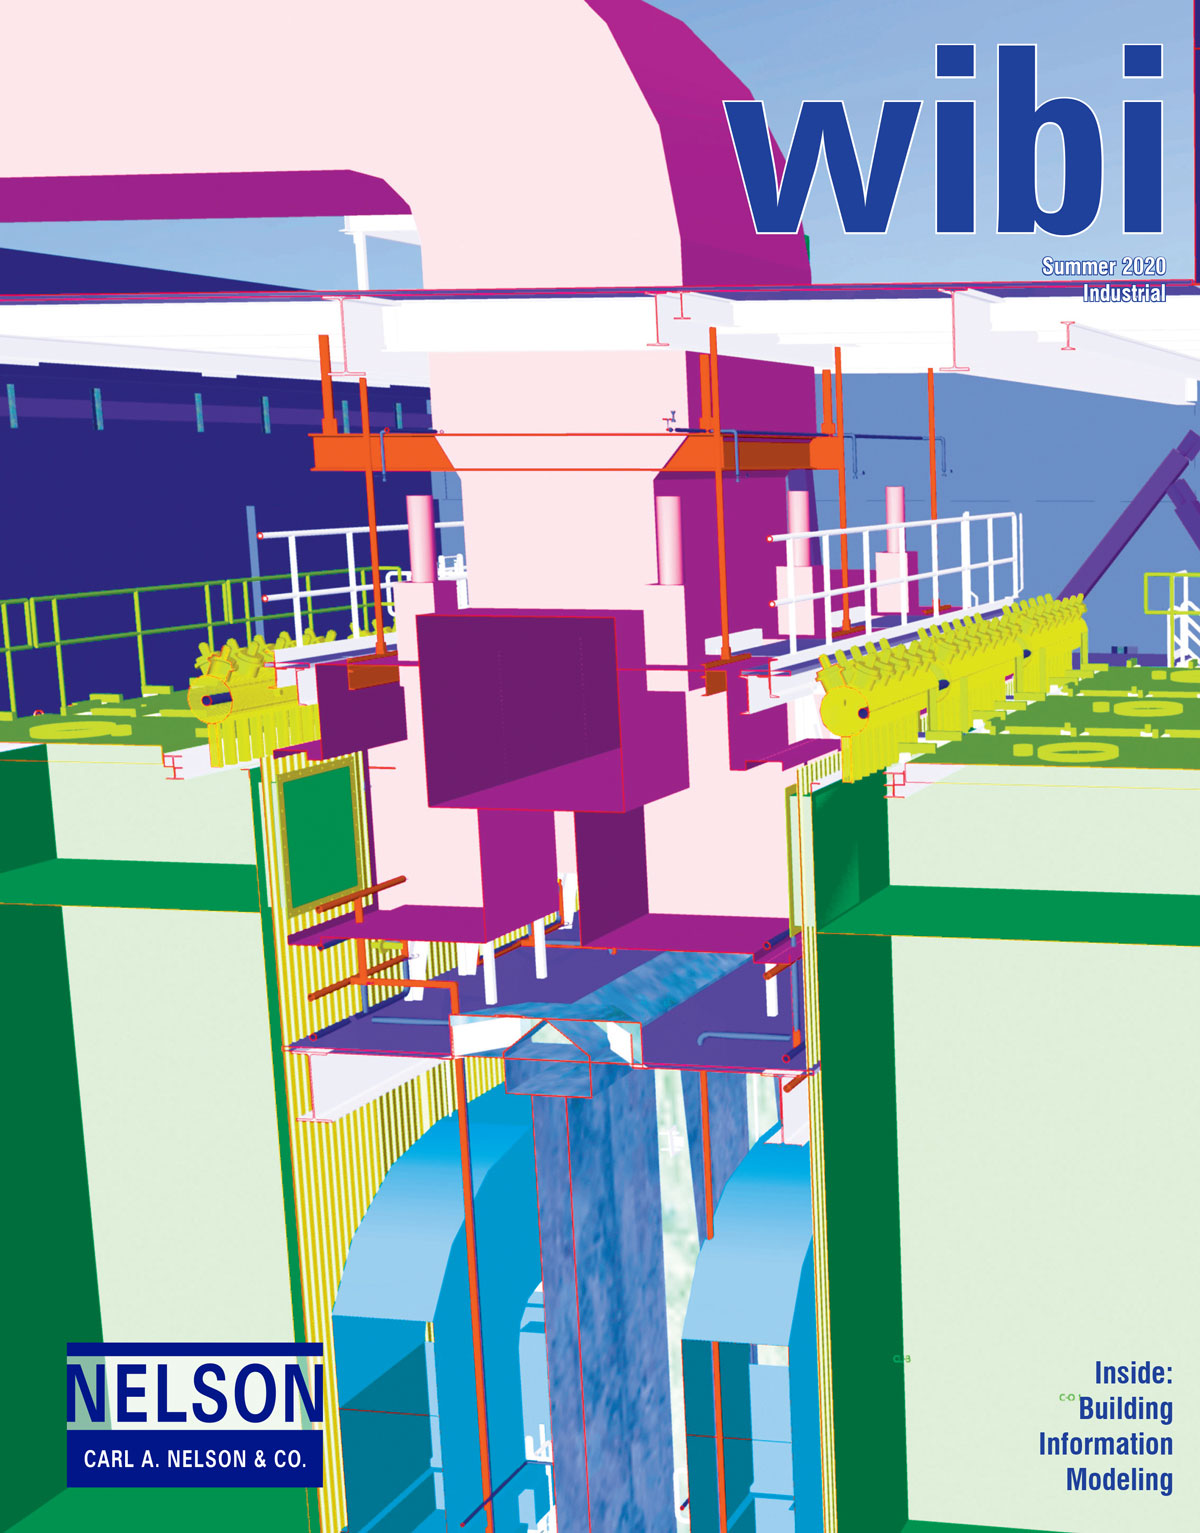 Summer 2020 Industrial wibi newsletter